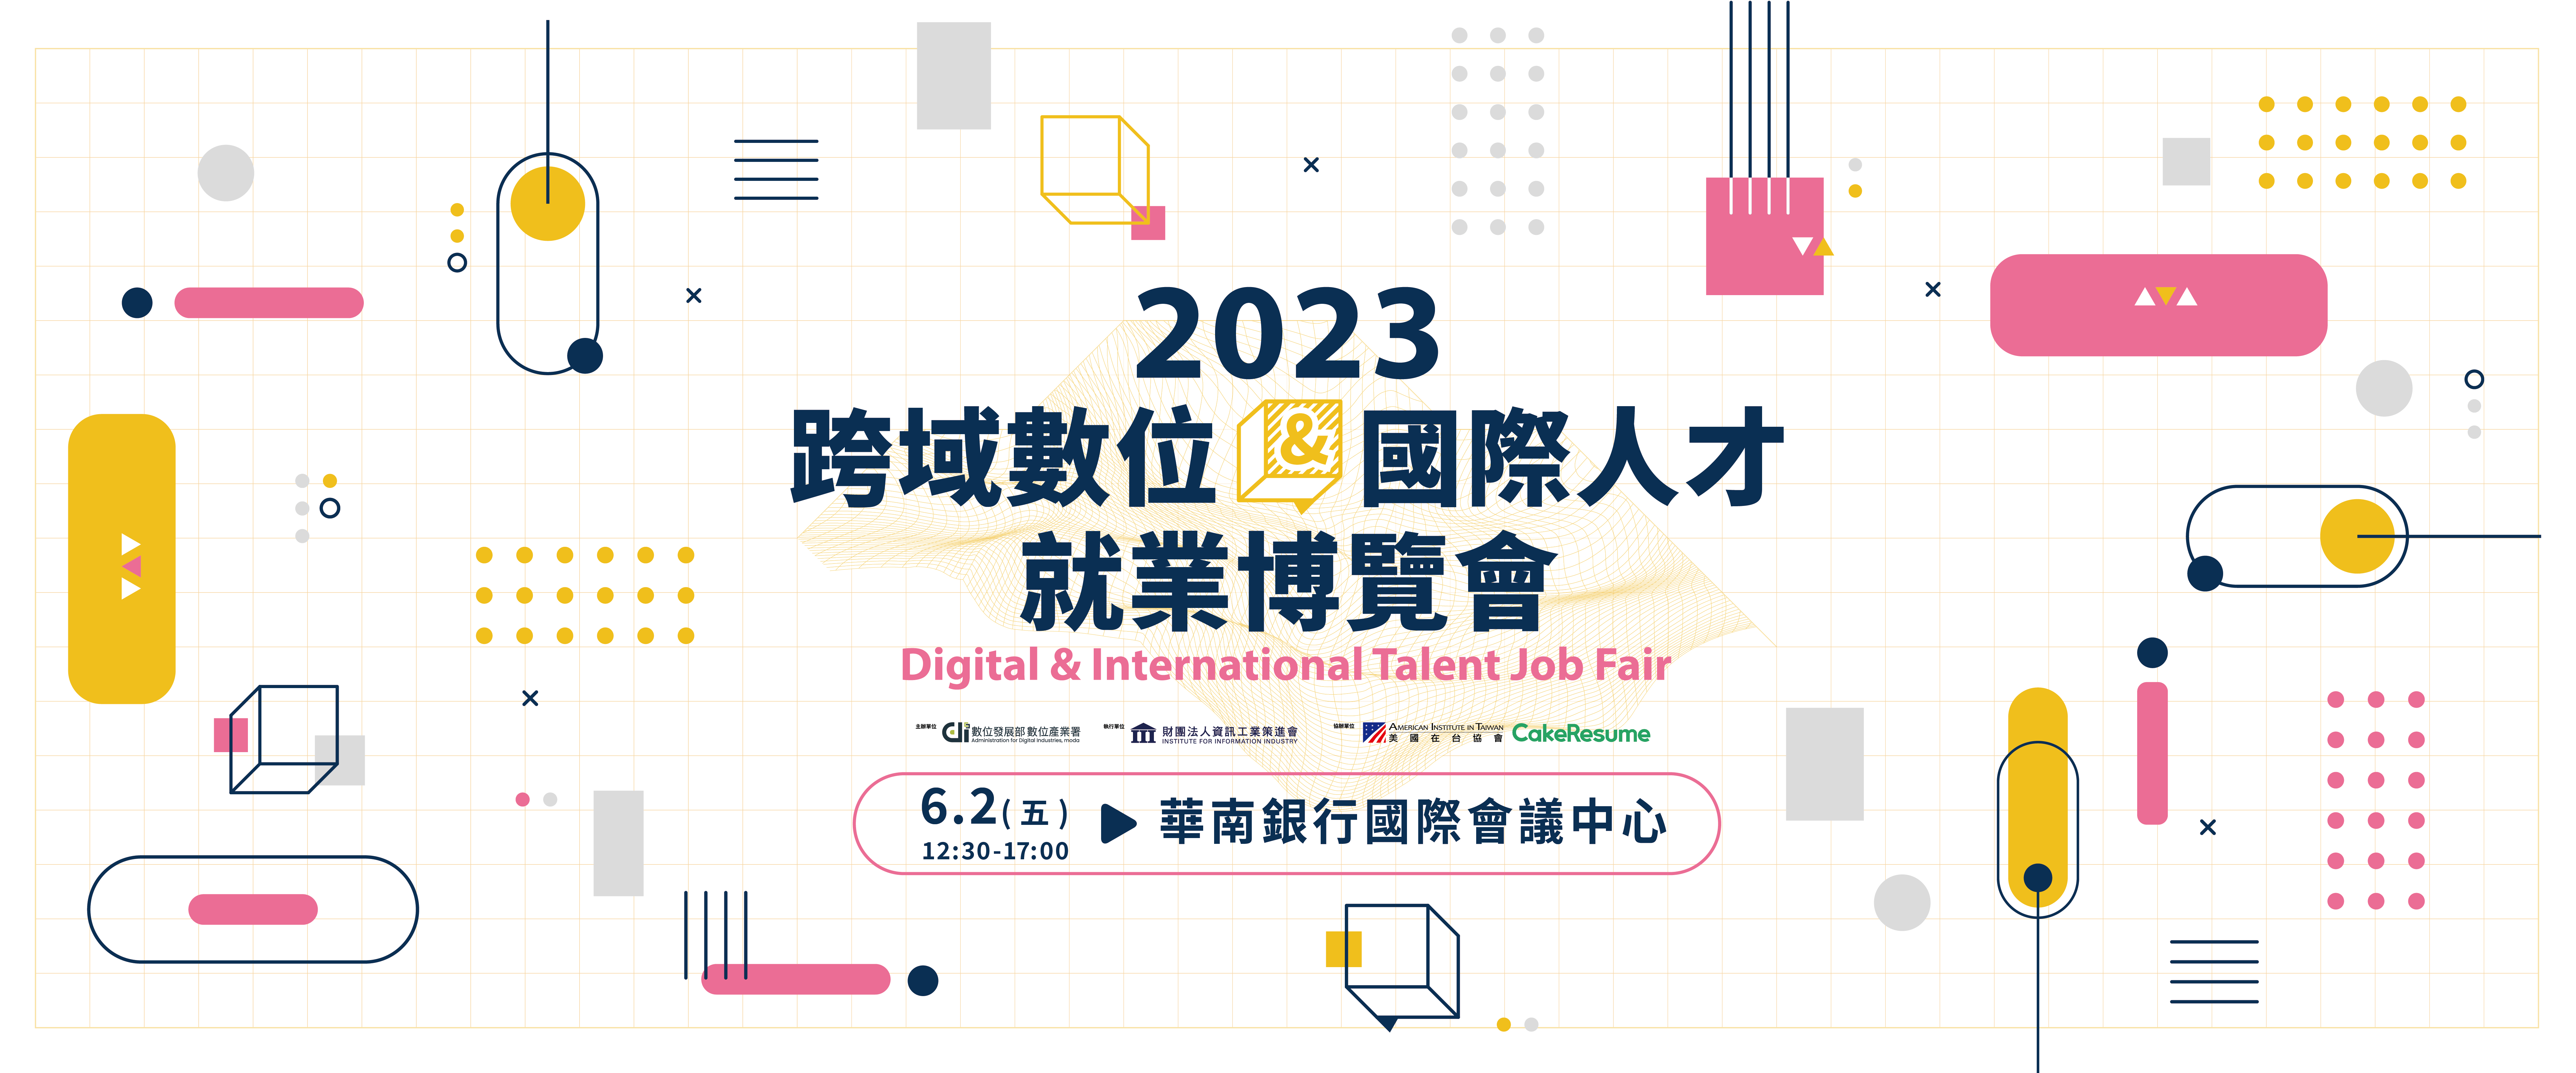 2023跨域數位暨國際人才就業博覽會